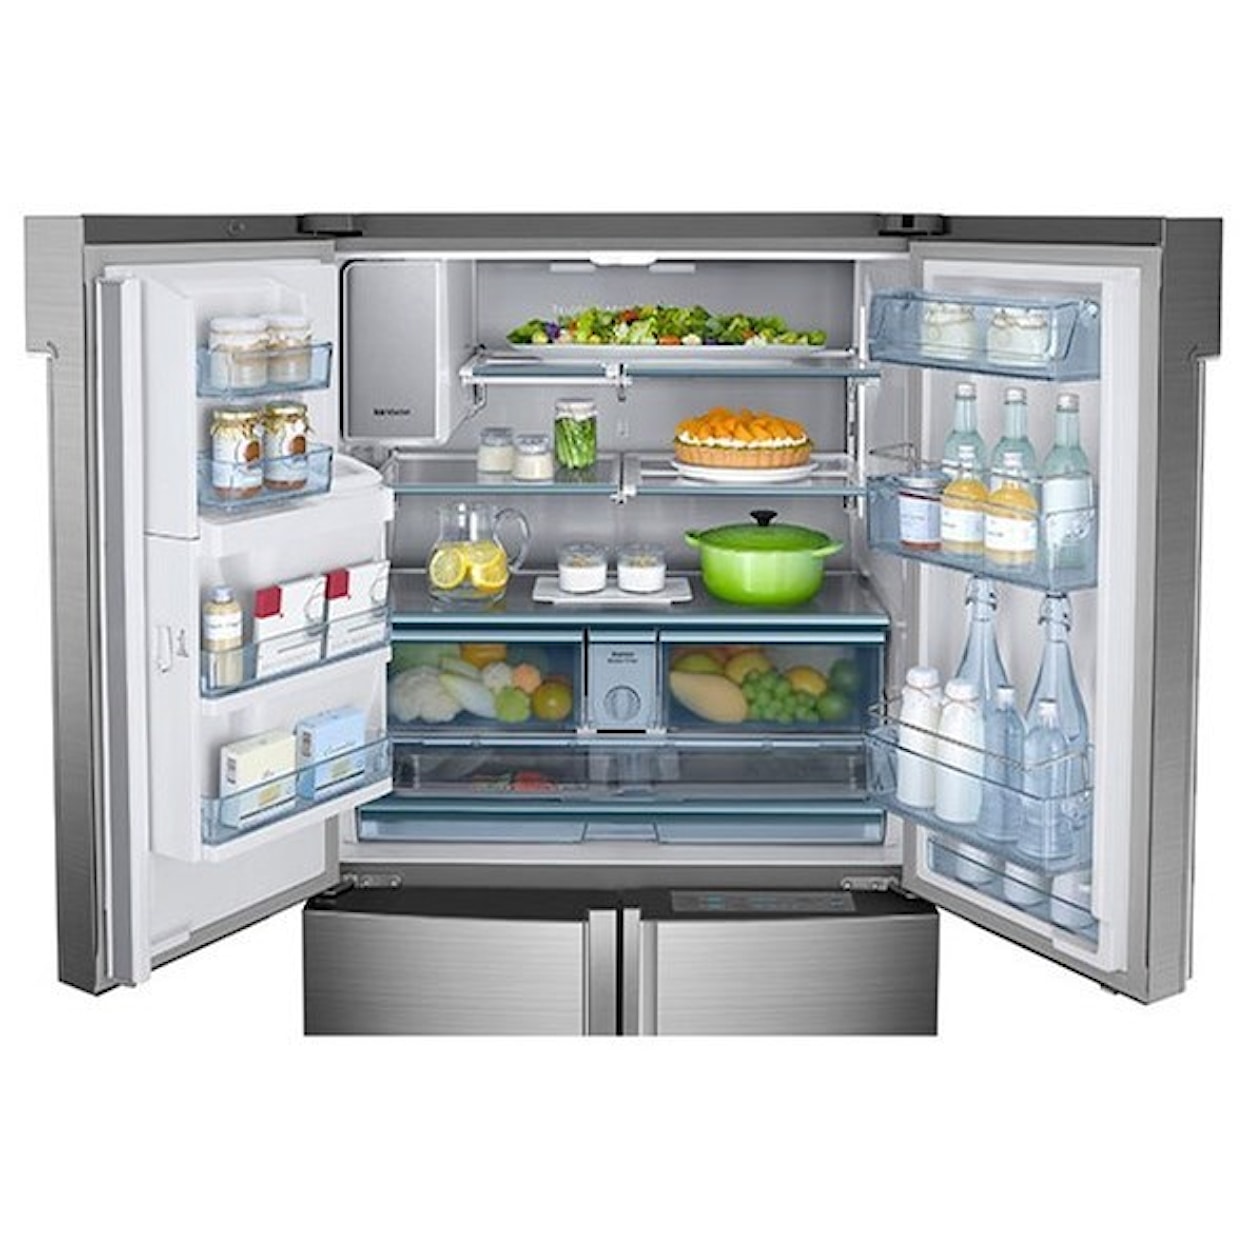 Samsung Appliances French Door Refrigerators 24 cu. ft. Counter Depth 4-Door Flex™ Fridge